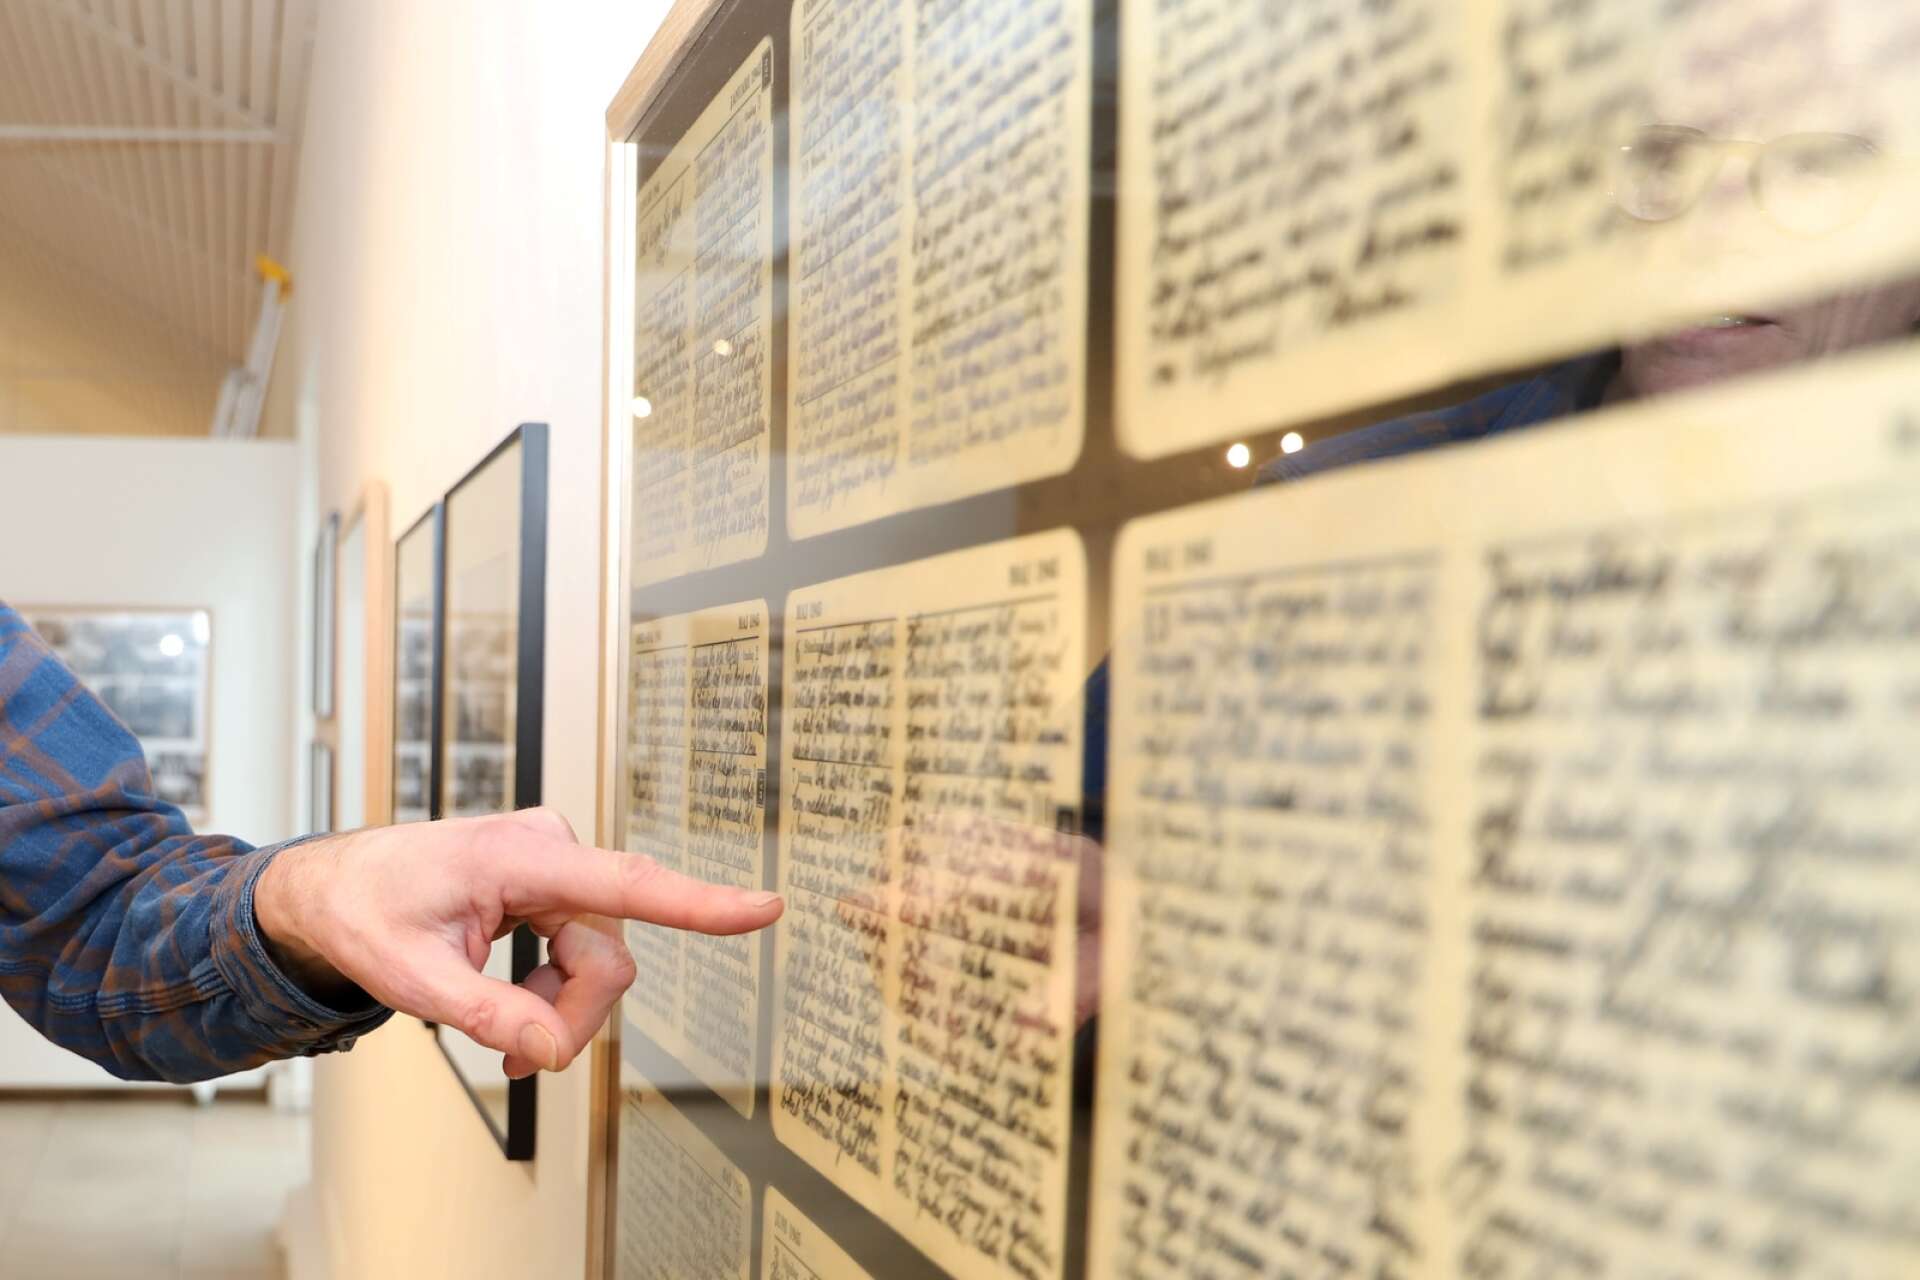 På utställningen Checkpoint visas dagboksanteckningar som Staffans pappa gjorde under kriget. ”Varje morgon skrev han om dagen innan.”